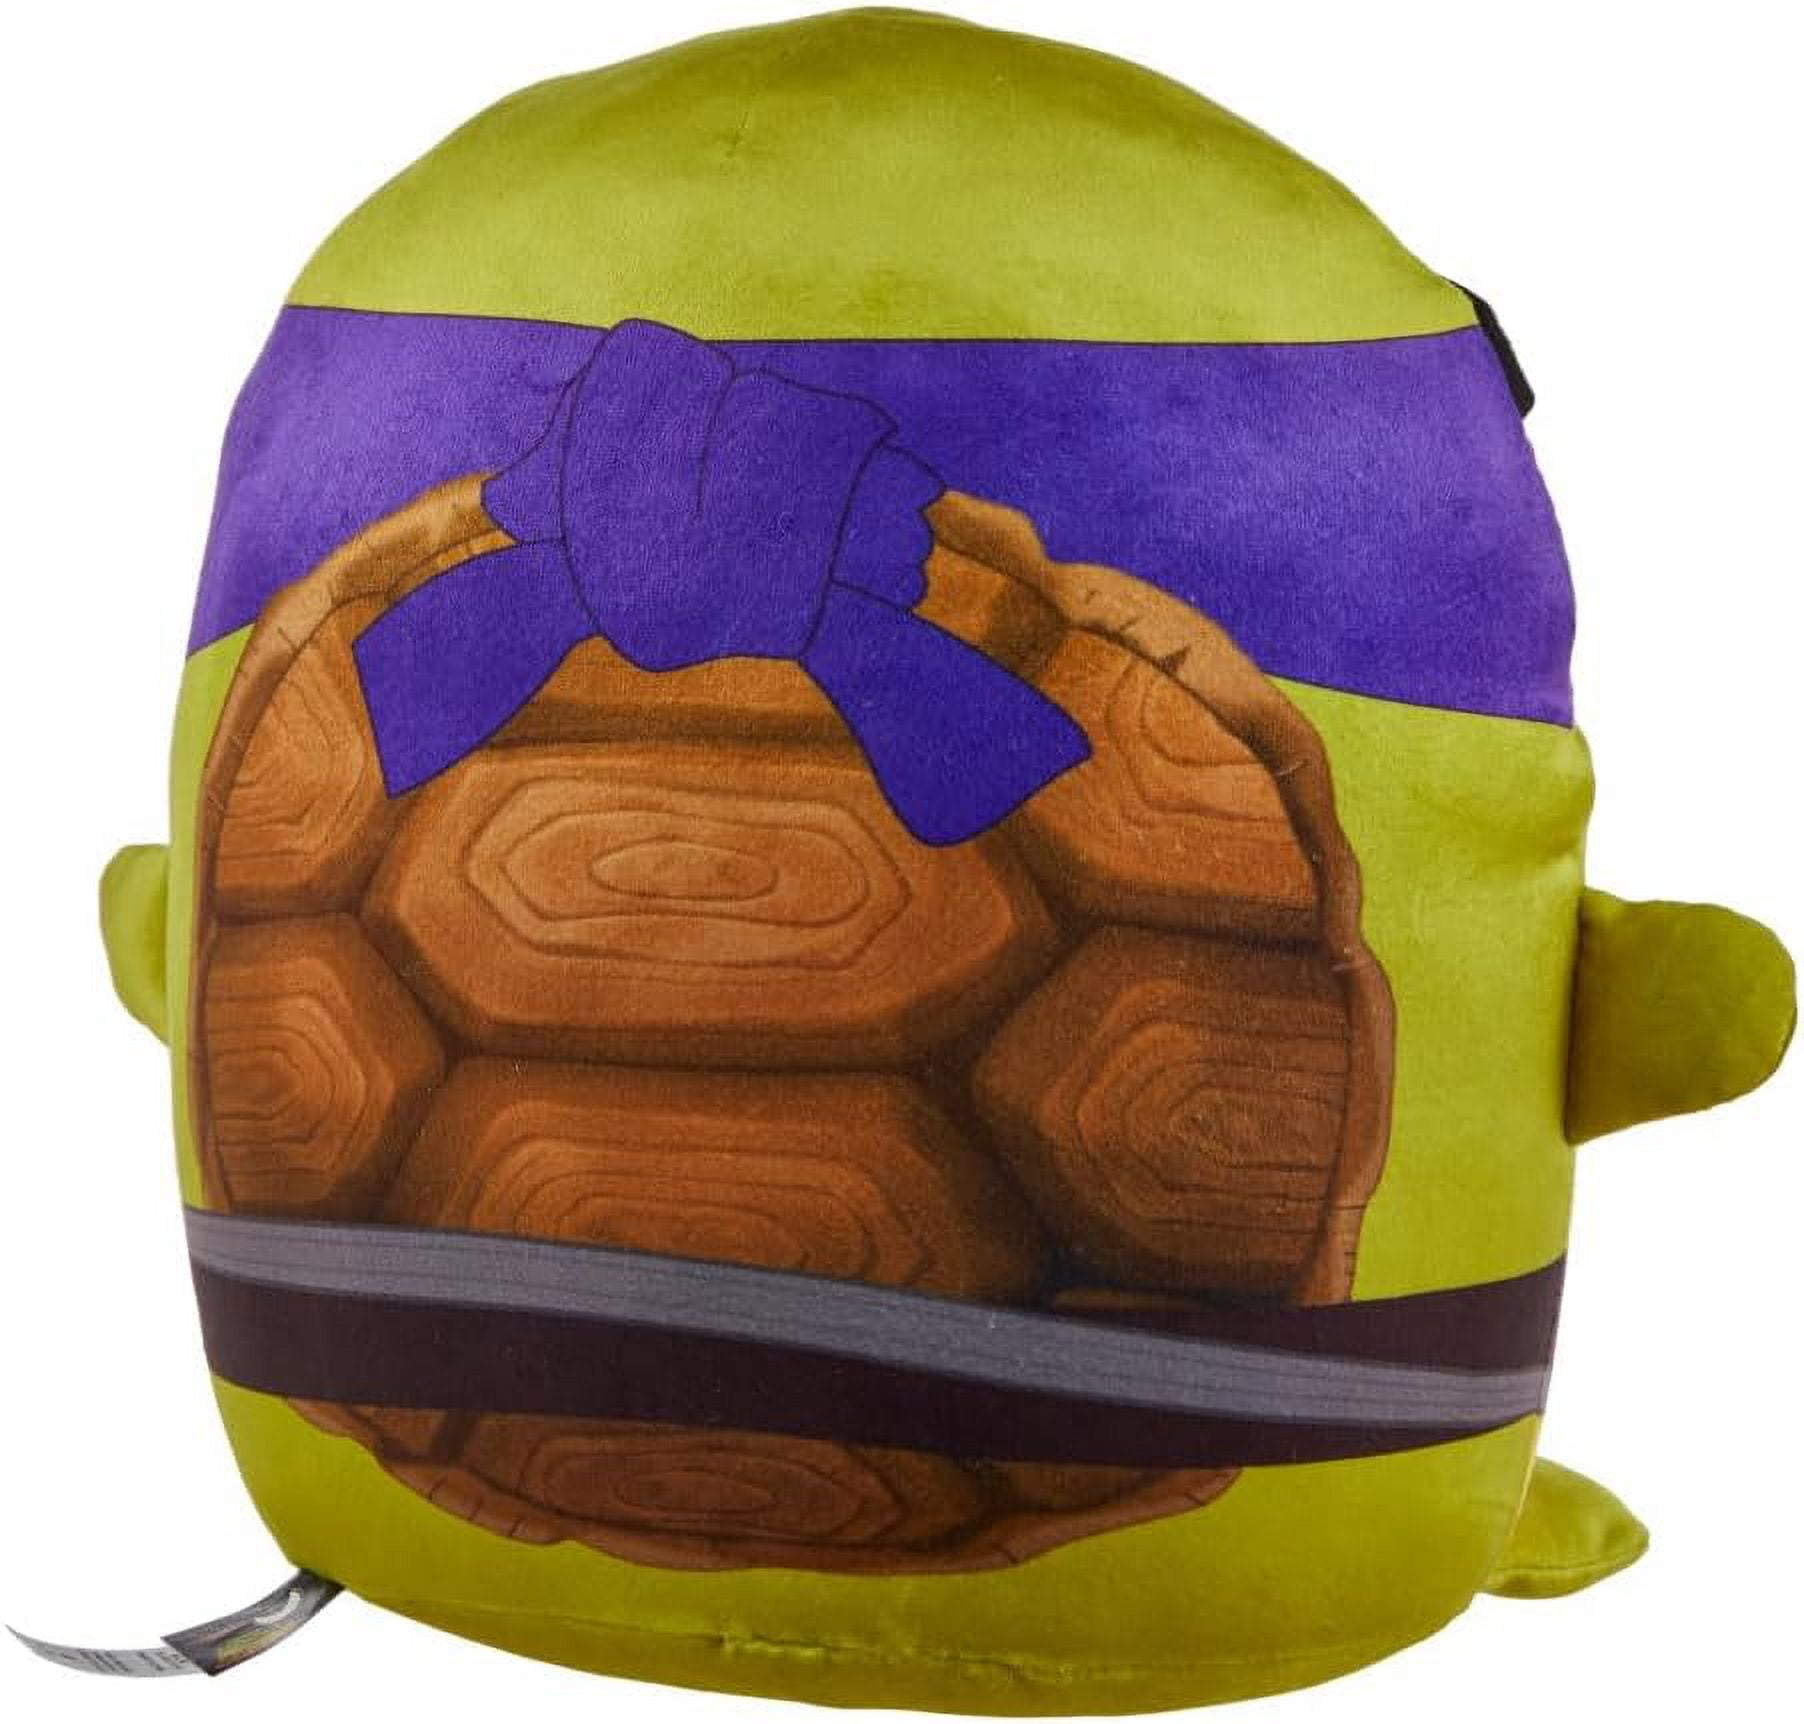 Donatello Ninja Turtle Plush • Magic Plush